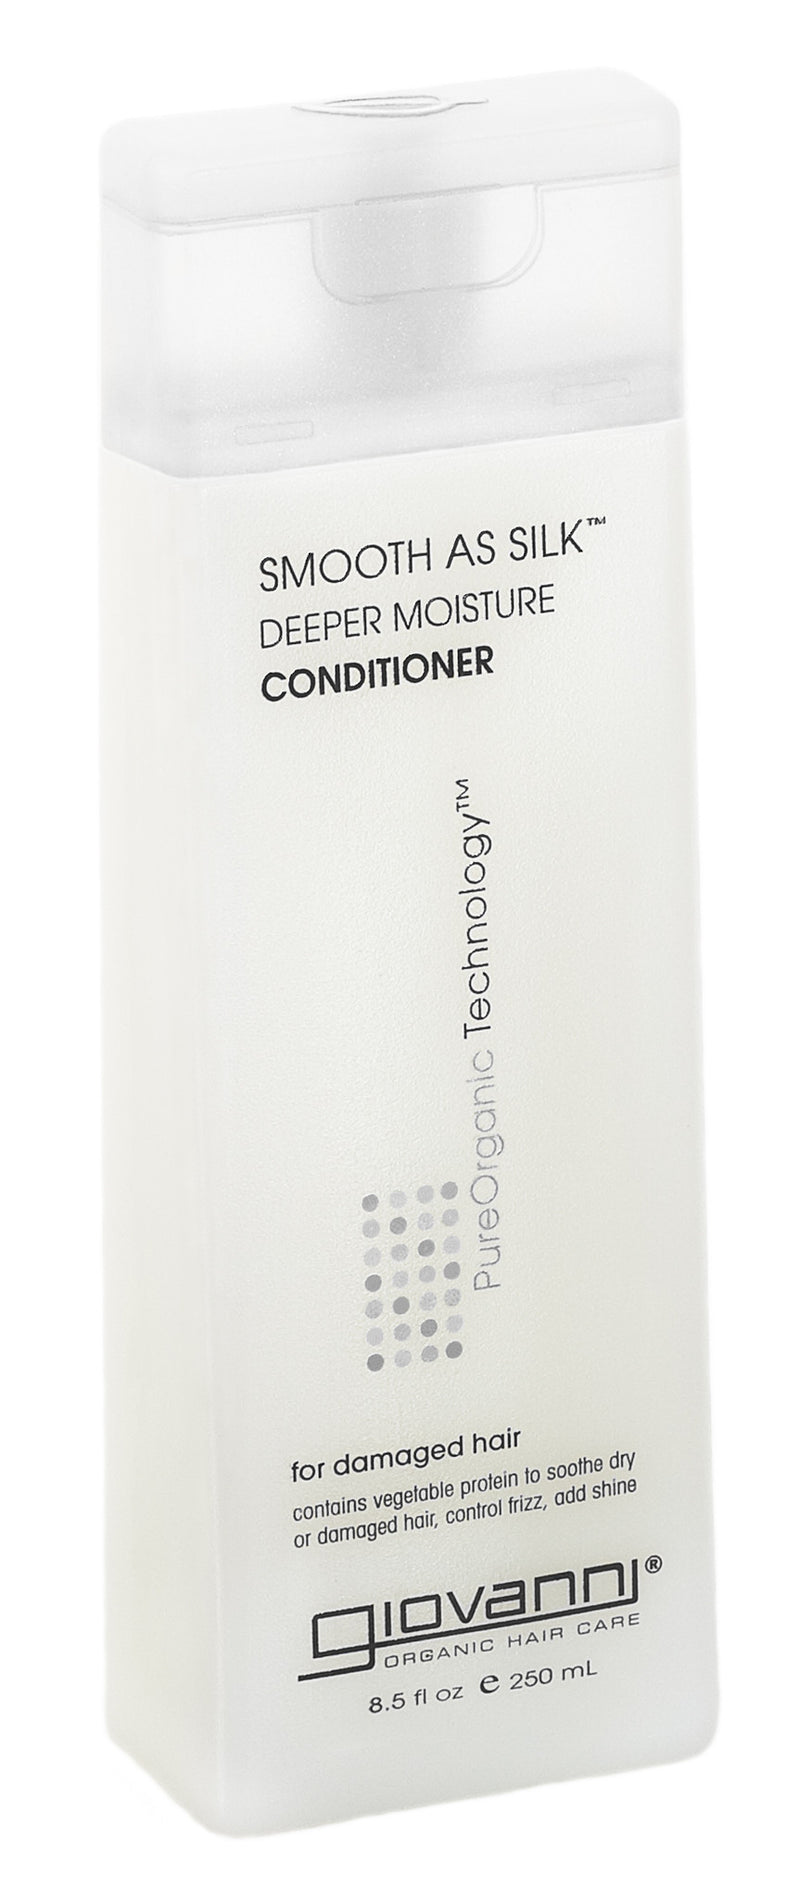 Smooth as Silk Conditioner